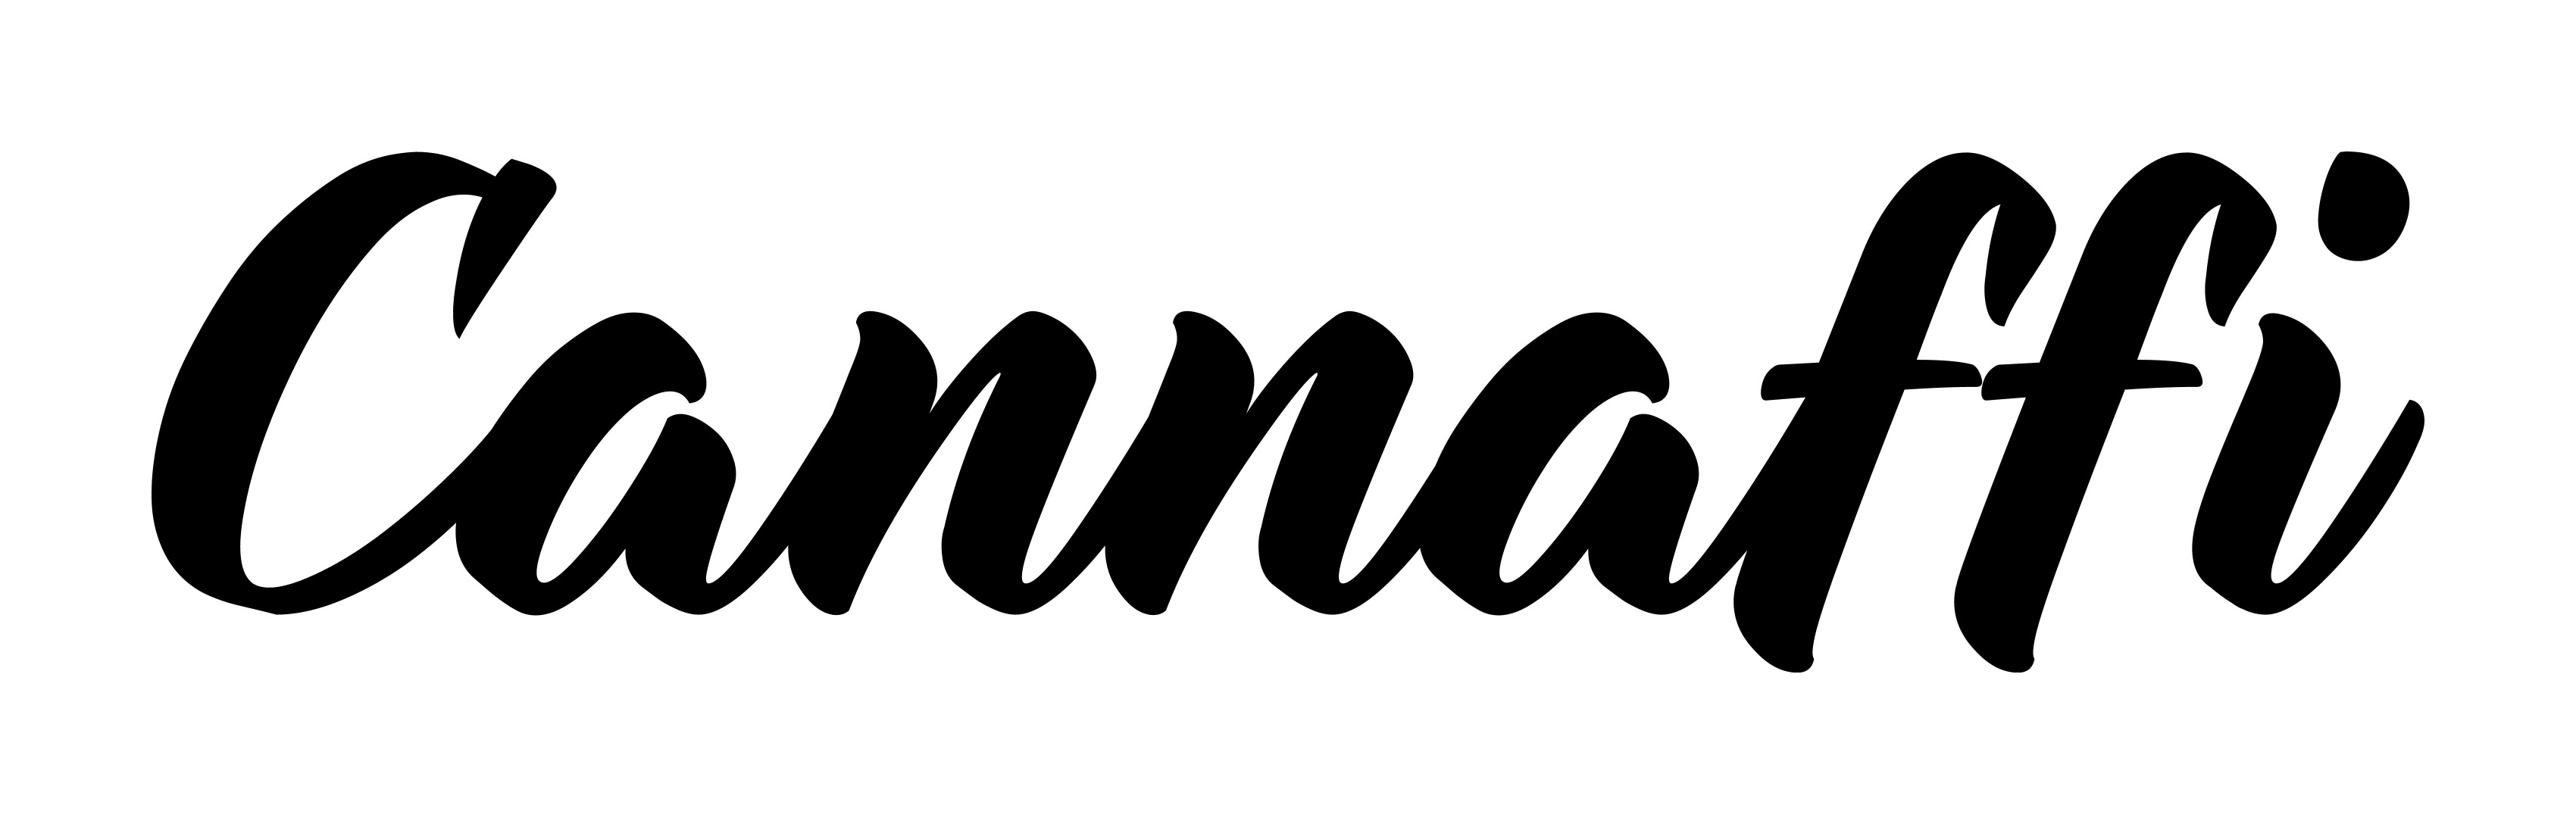 Cannaffi logo